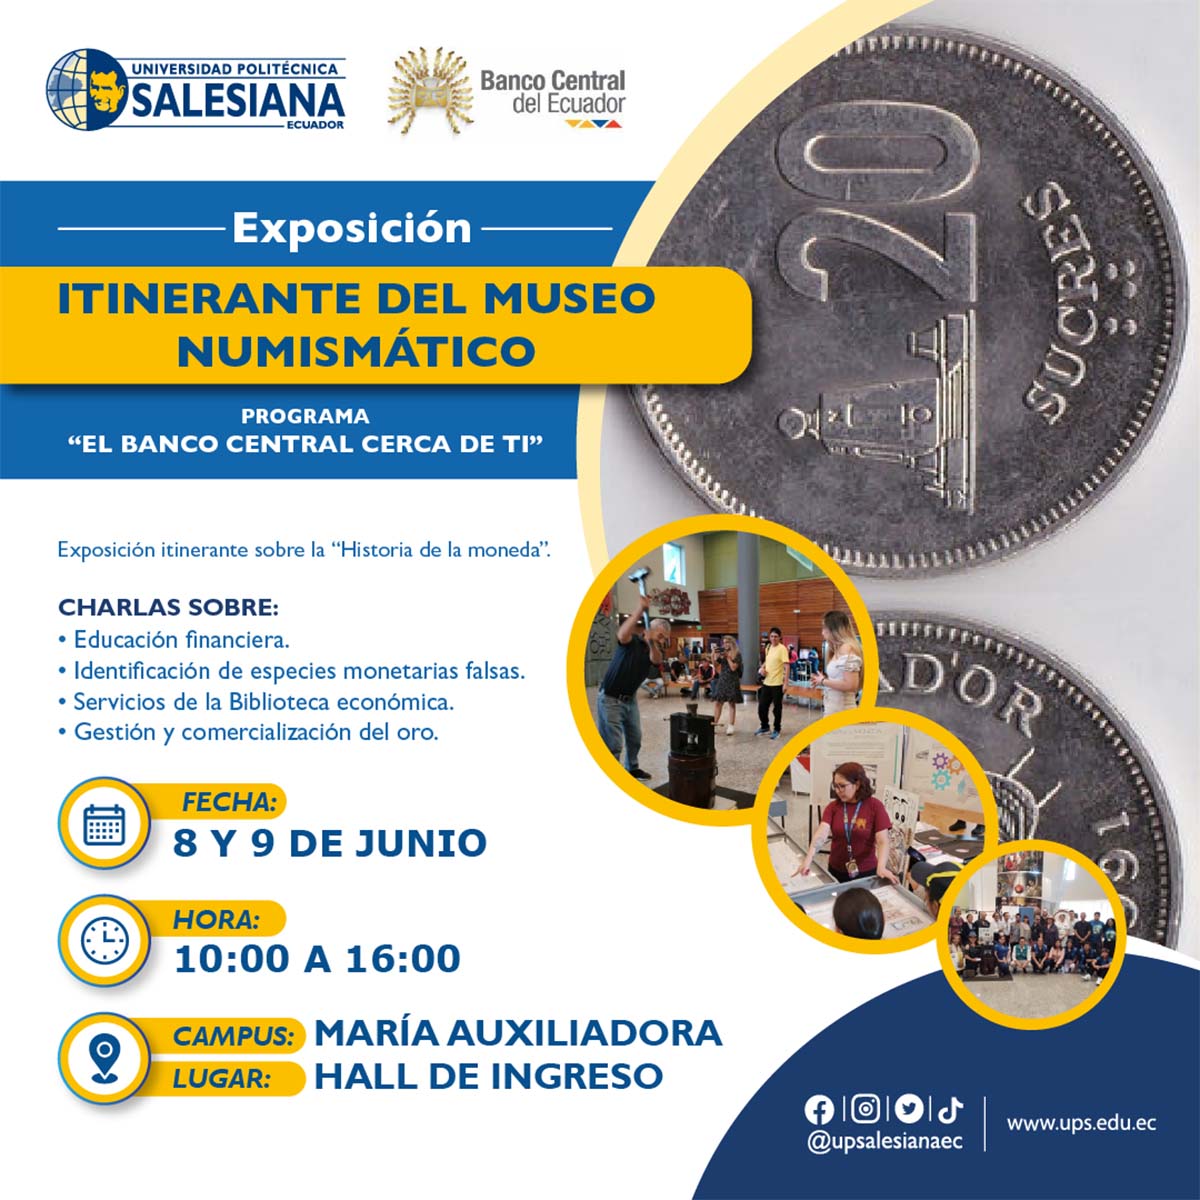 Afiche promocional de la Exposición Itinerante del Museo Numismático del Banco Central